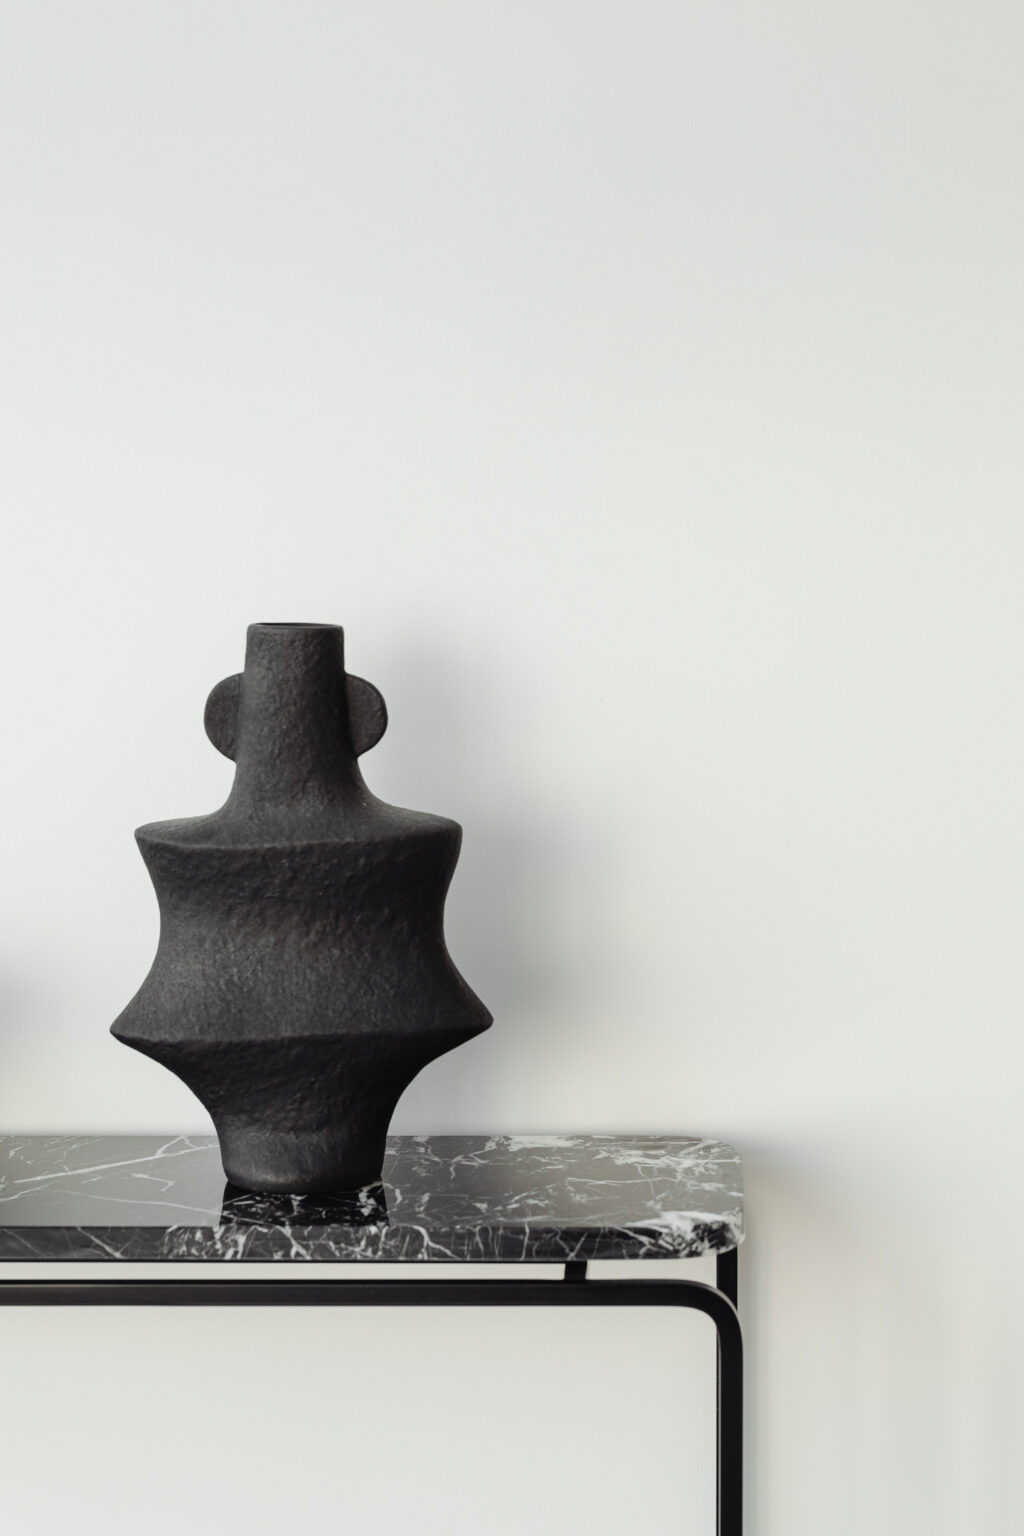 kaboompics_marble-console-furniture-ceramic-black-vase-27221 (2)